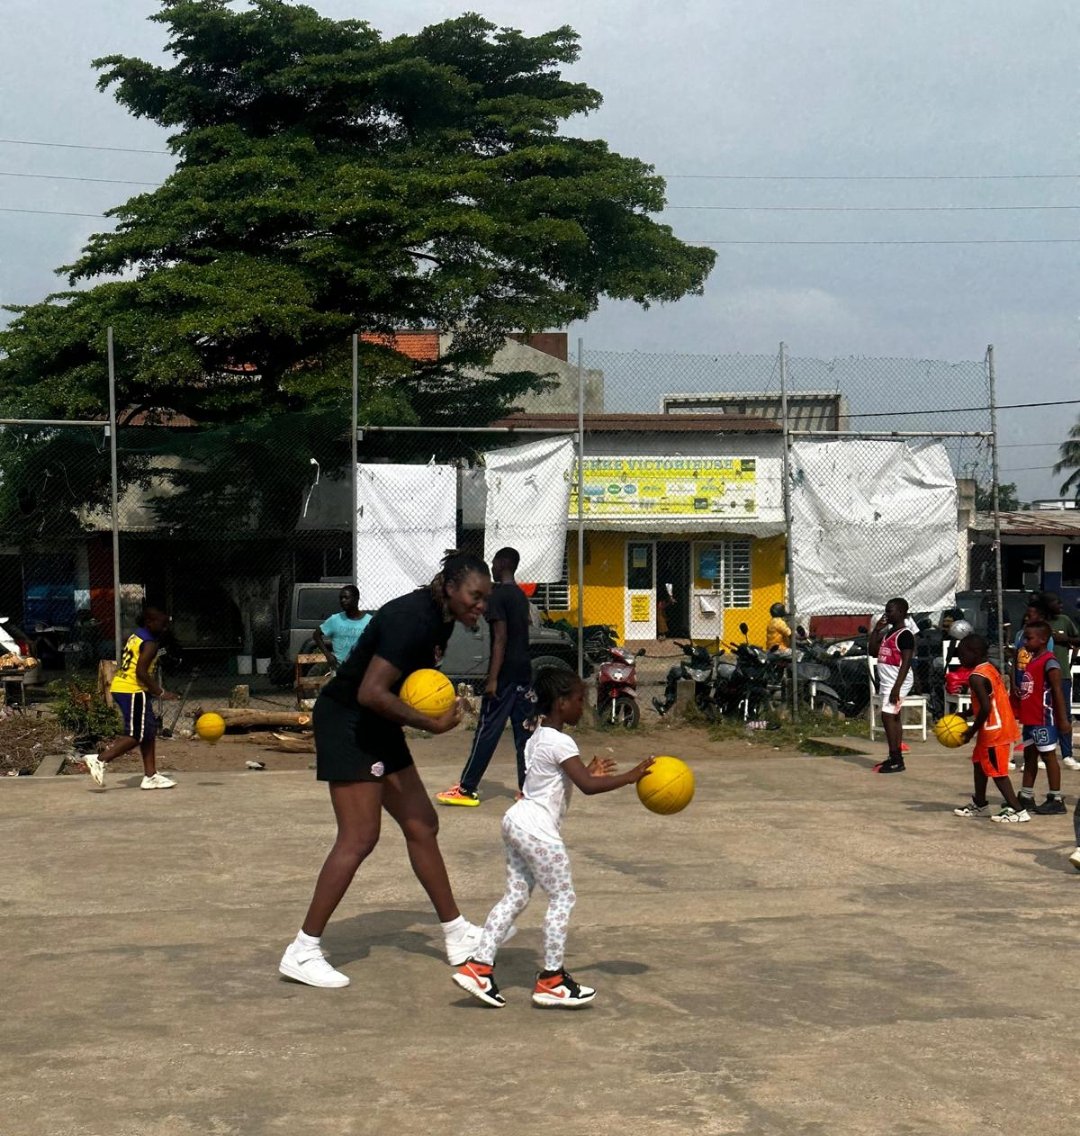 Isabelle Yacoubou à la maison du peuple d'Agla de Cotonou ce samedi pour encadrer des  bébés basketteurs.
@shaqoubou @AblamGnamesso 
#BéninBasket @BeninRetweets